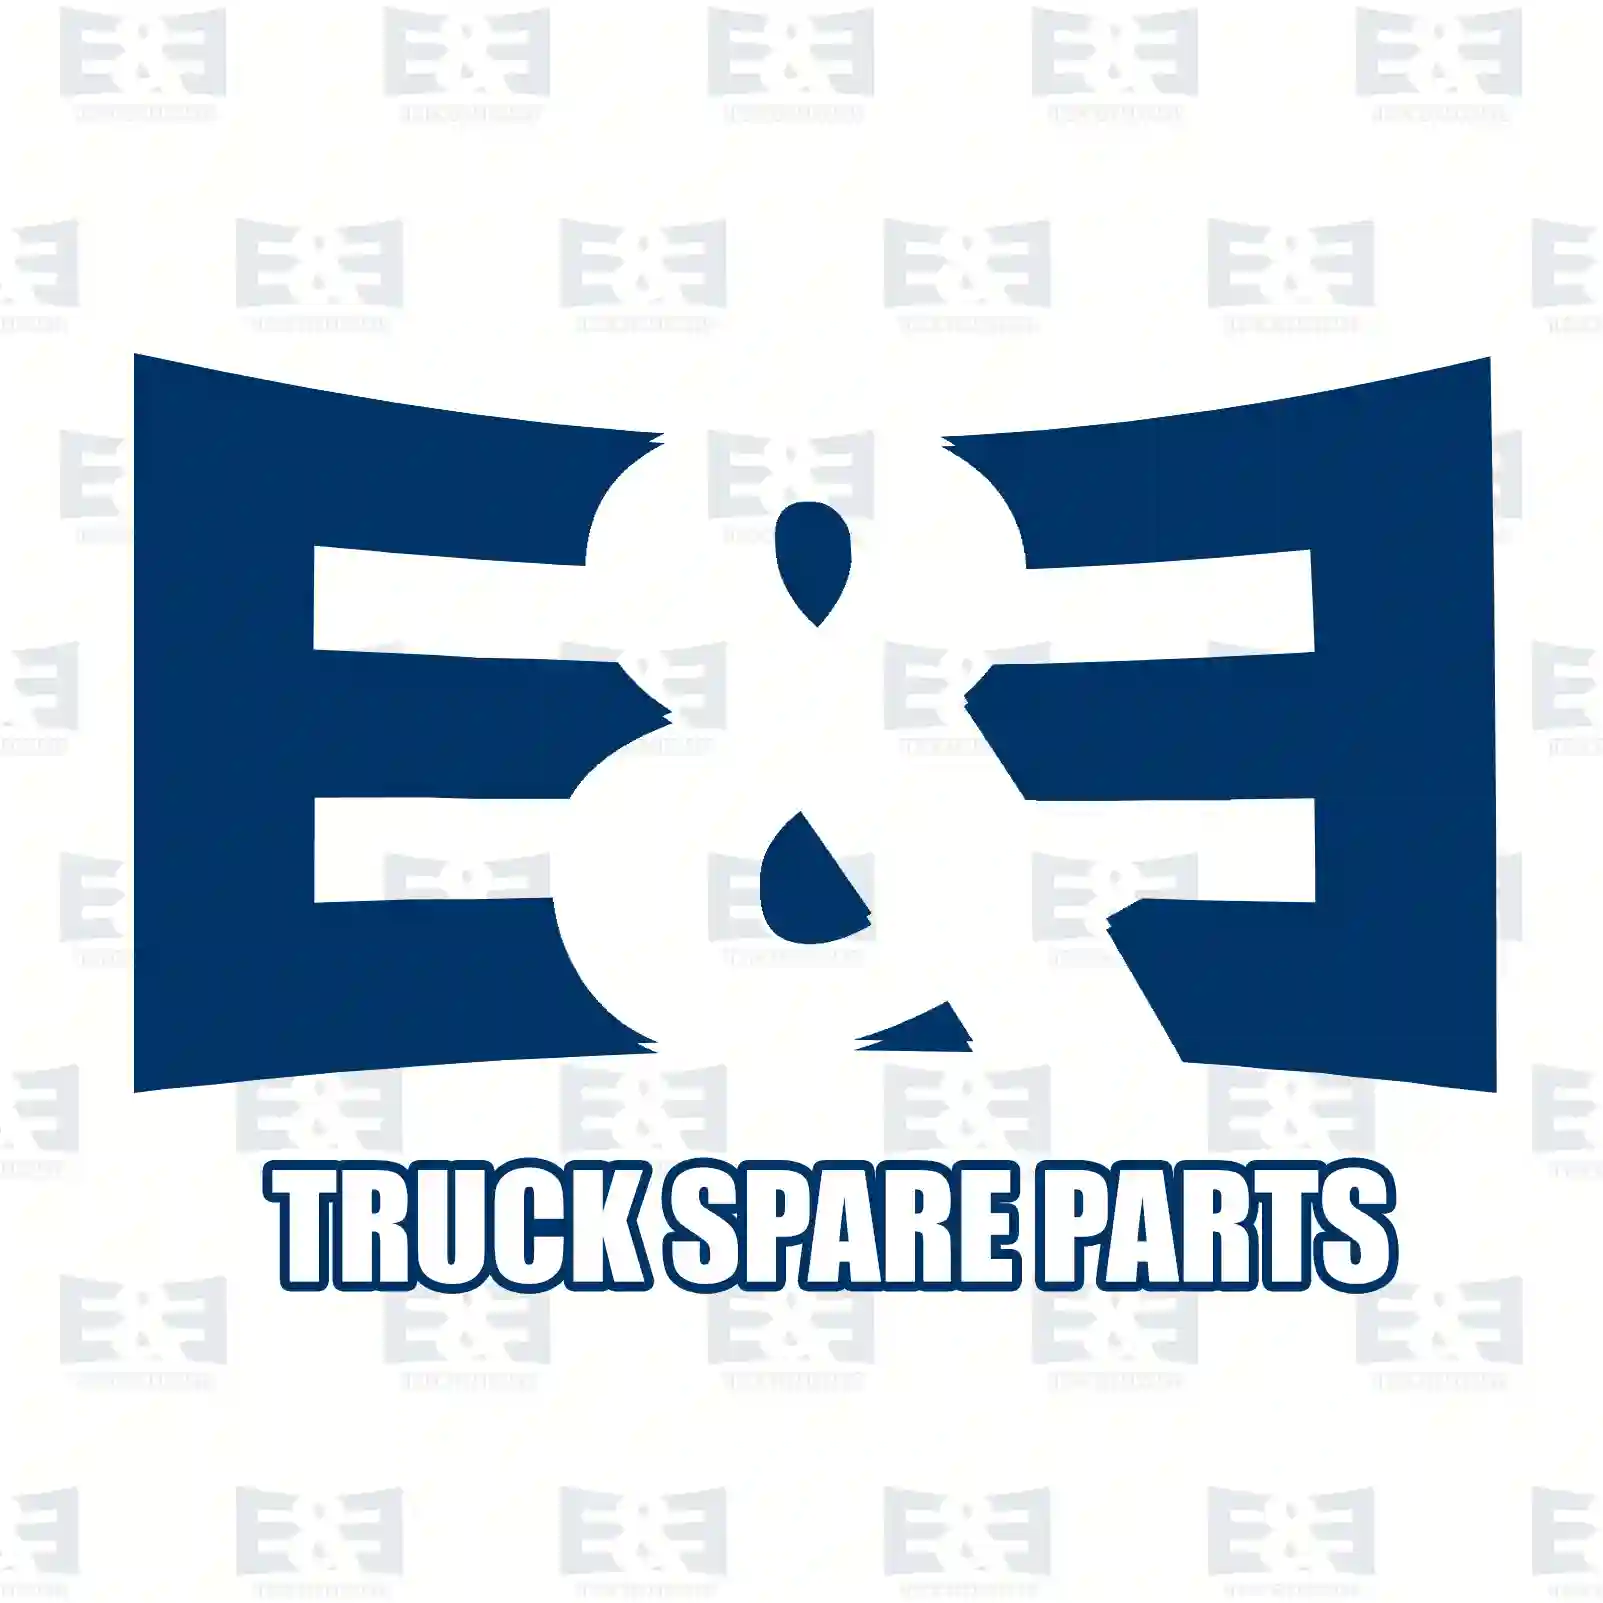 Brake caliper, left, reman. / without old core, 2E2296054, 0014205801, 0014206001, 0024202001, 0024202501, 0024203301, 0024203601, 9754201801, 9754202001, 9754202201, 9754202401, MXC9102016 ||  2E2296054 E&E Truck Spare Parts | Truck Spare Parts, Auotomotive Spare Parts Brake caliper, left, reman. / without old core, 2E2296054, 0014205801, 0014206001, 0024202001, 0024202501, 0024203301, 0024203601, 9754201801, 9754202001, 9754202201, 9754202401, MXC9102016 ||  2E2296054 E&E Truck Spare Parts | Truck Spare Parts, Auotomotive Spare Parts